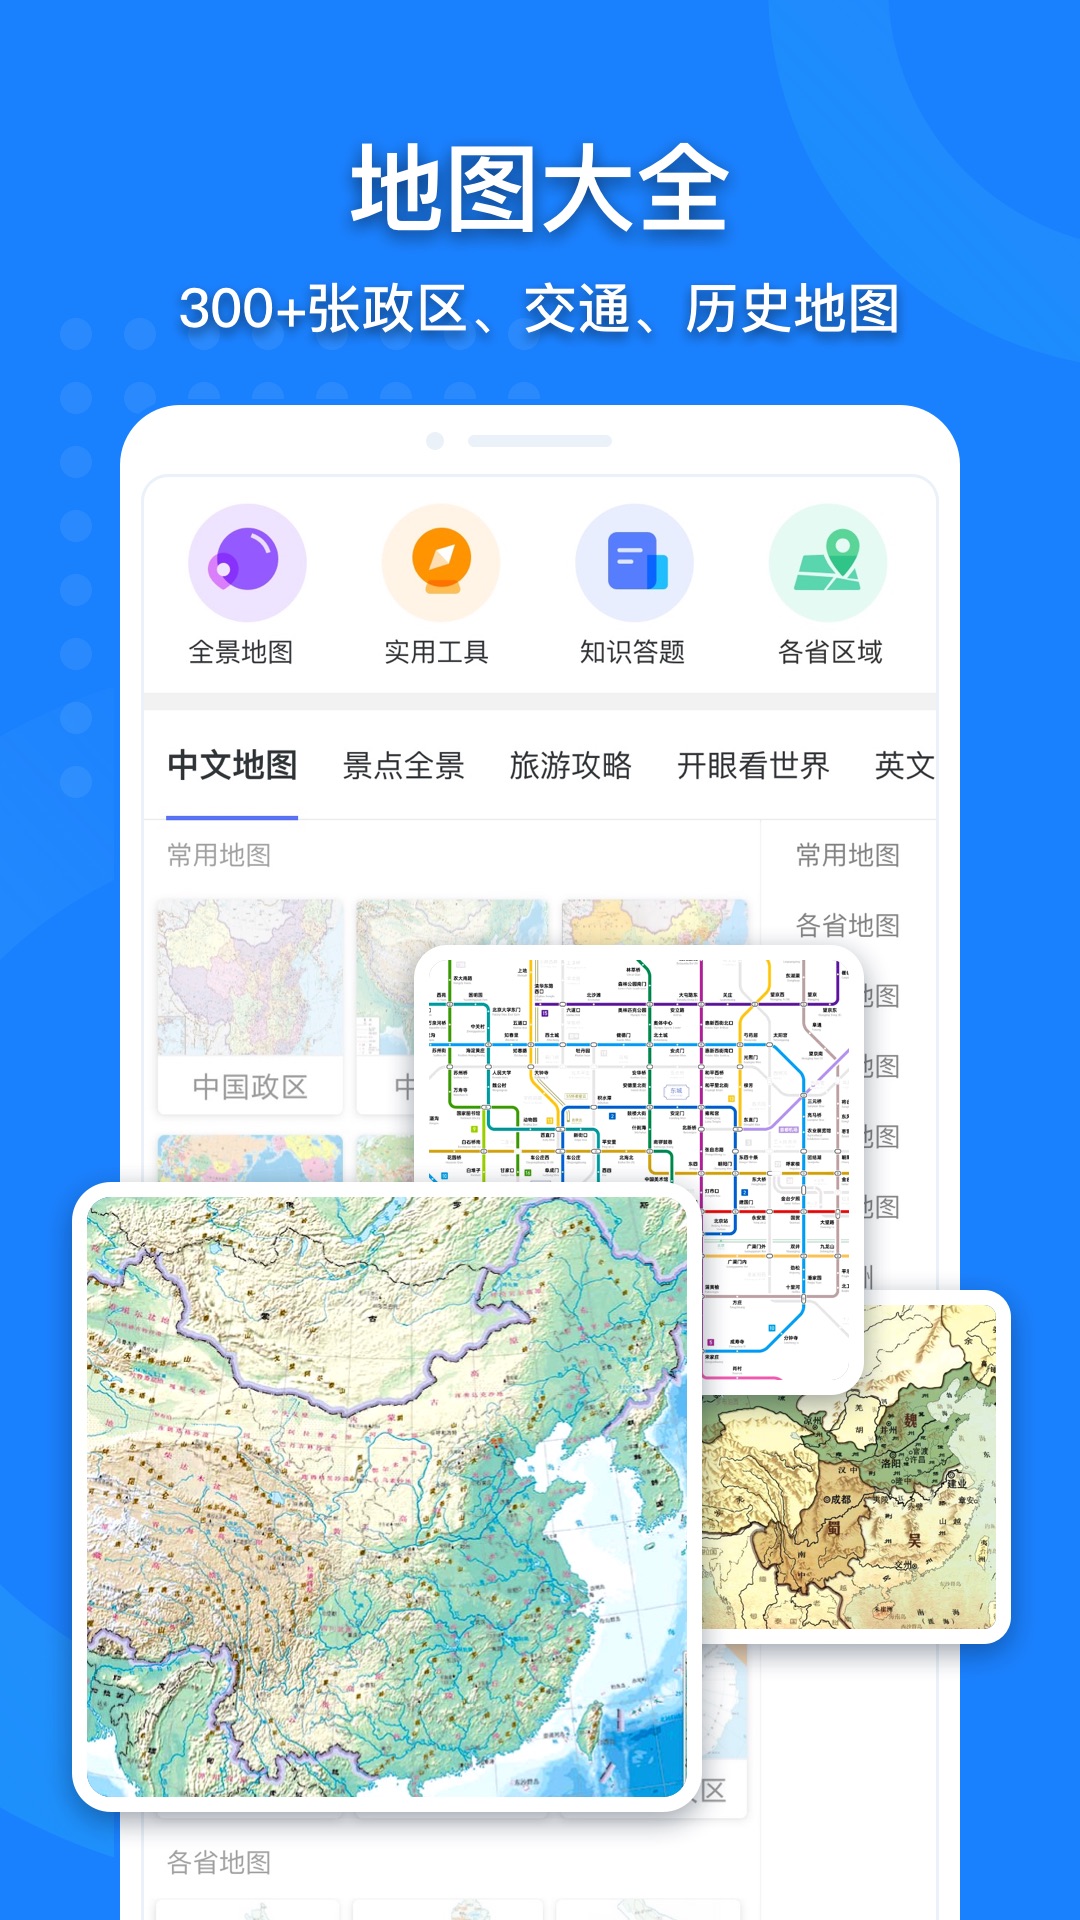 中国地图高清版大图截图1